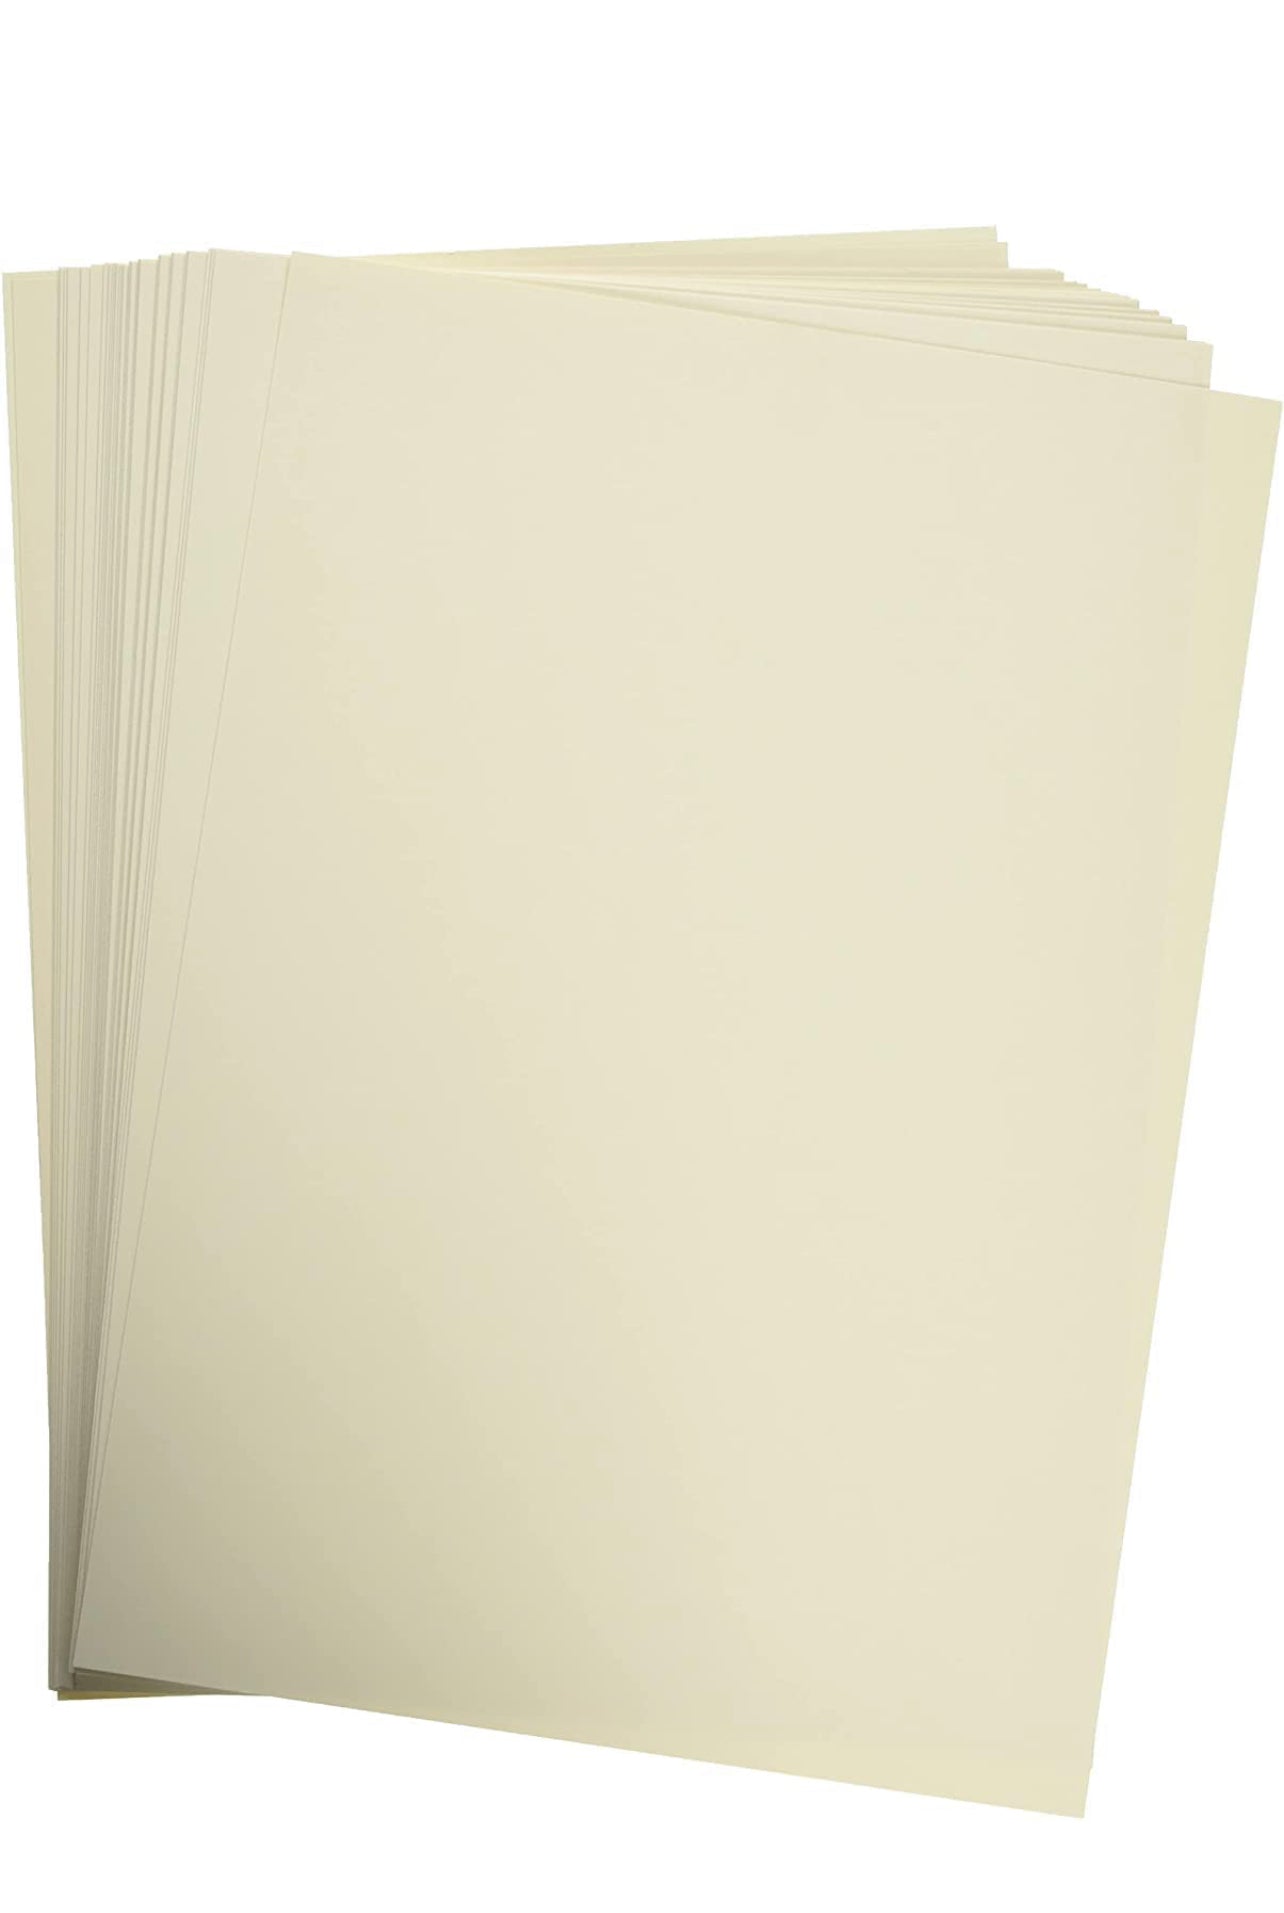 Concord Paper 50 Sheet Pack || ورق فاخر كونكورد باكيت ٥٠ ورقة